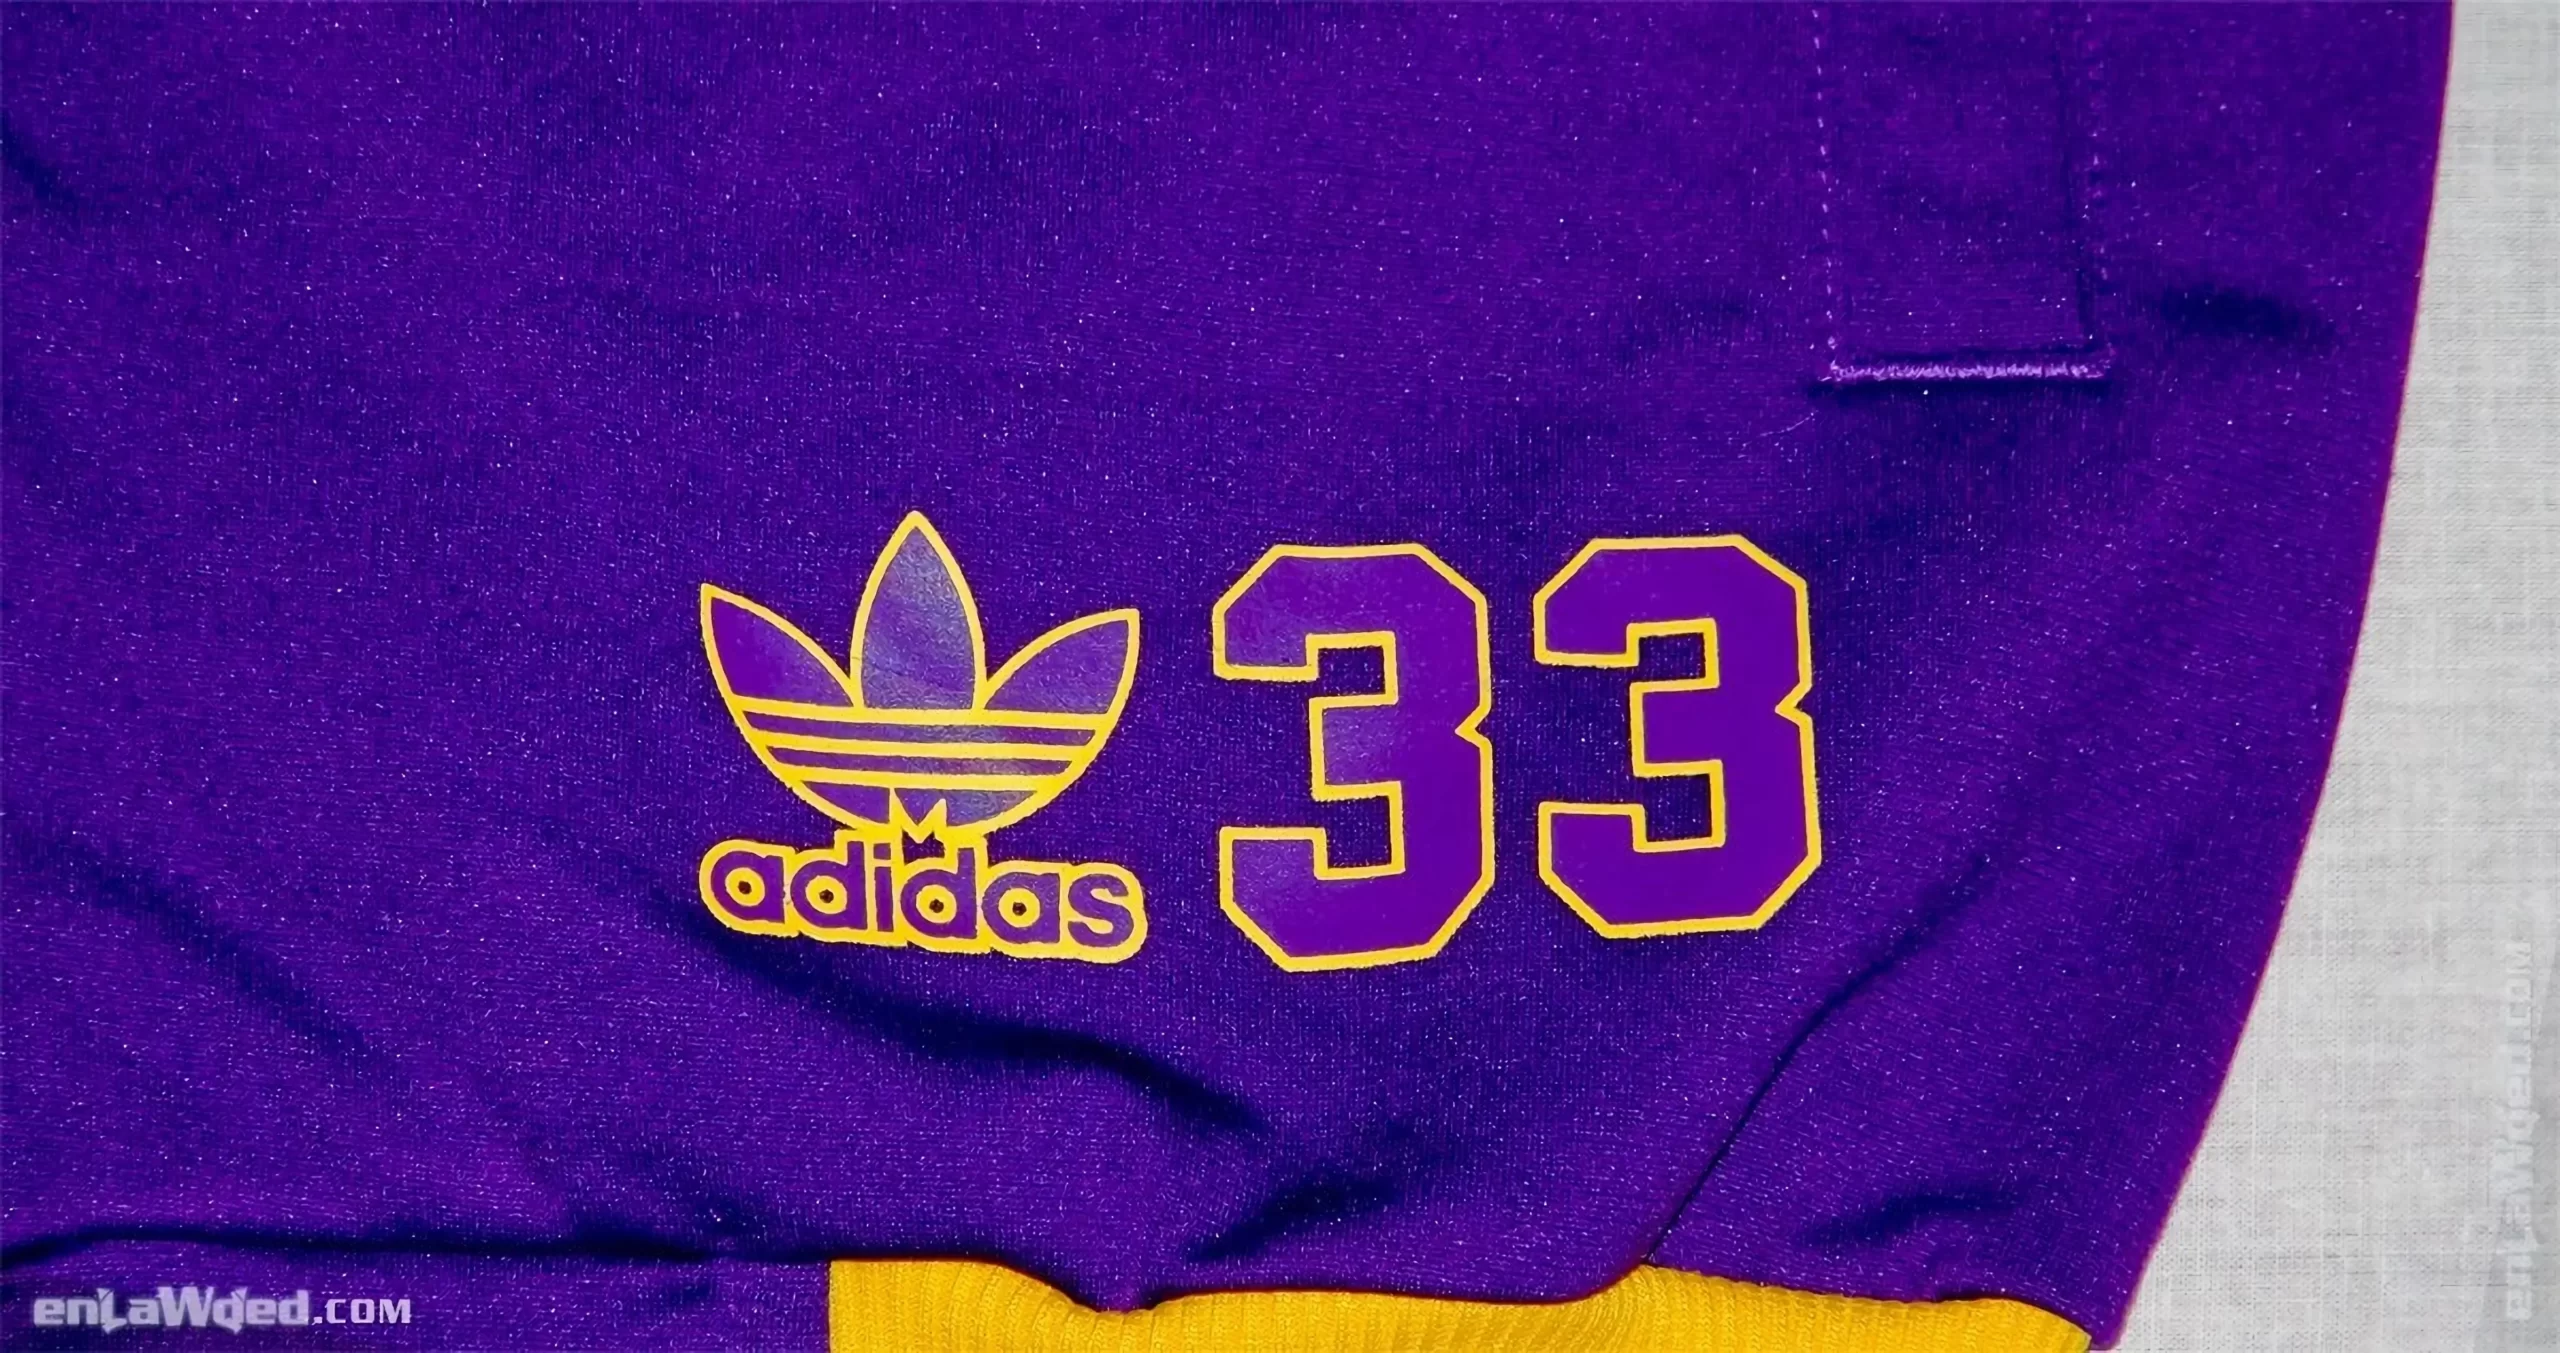 Men’s 2004 SkyHook Lakers #33 Track Top by Adidas: Rookie (EnLawded.com file #lmchk90366ip2y124420kg9st)